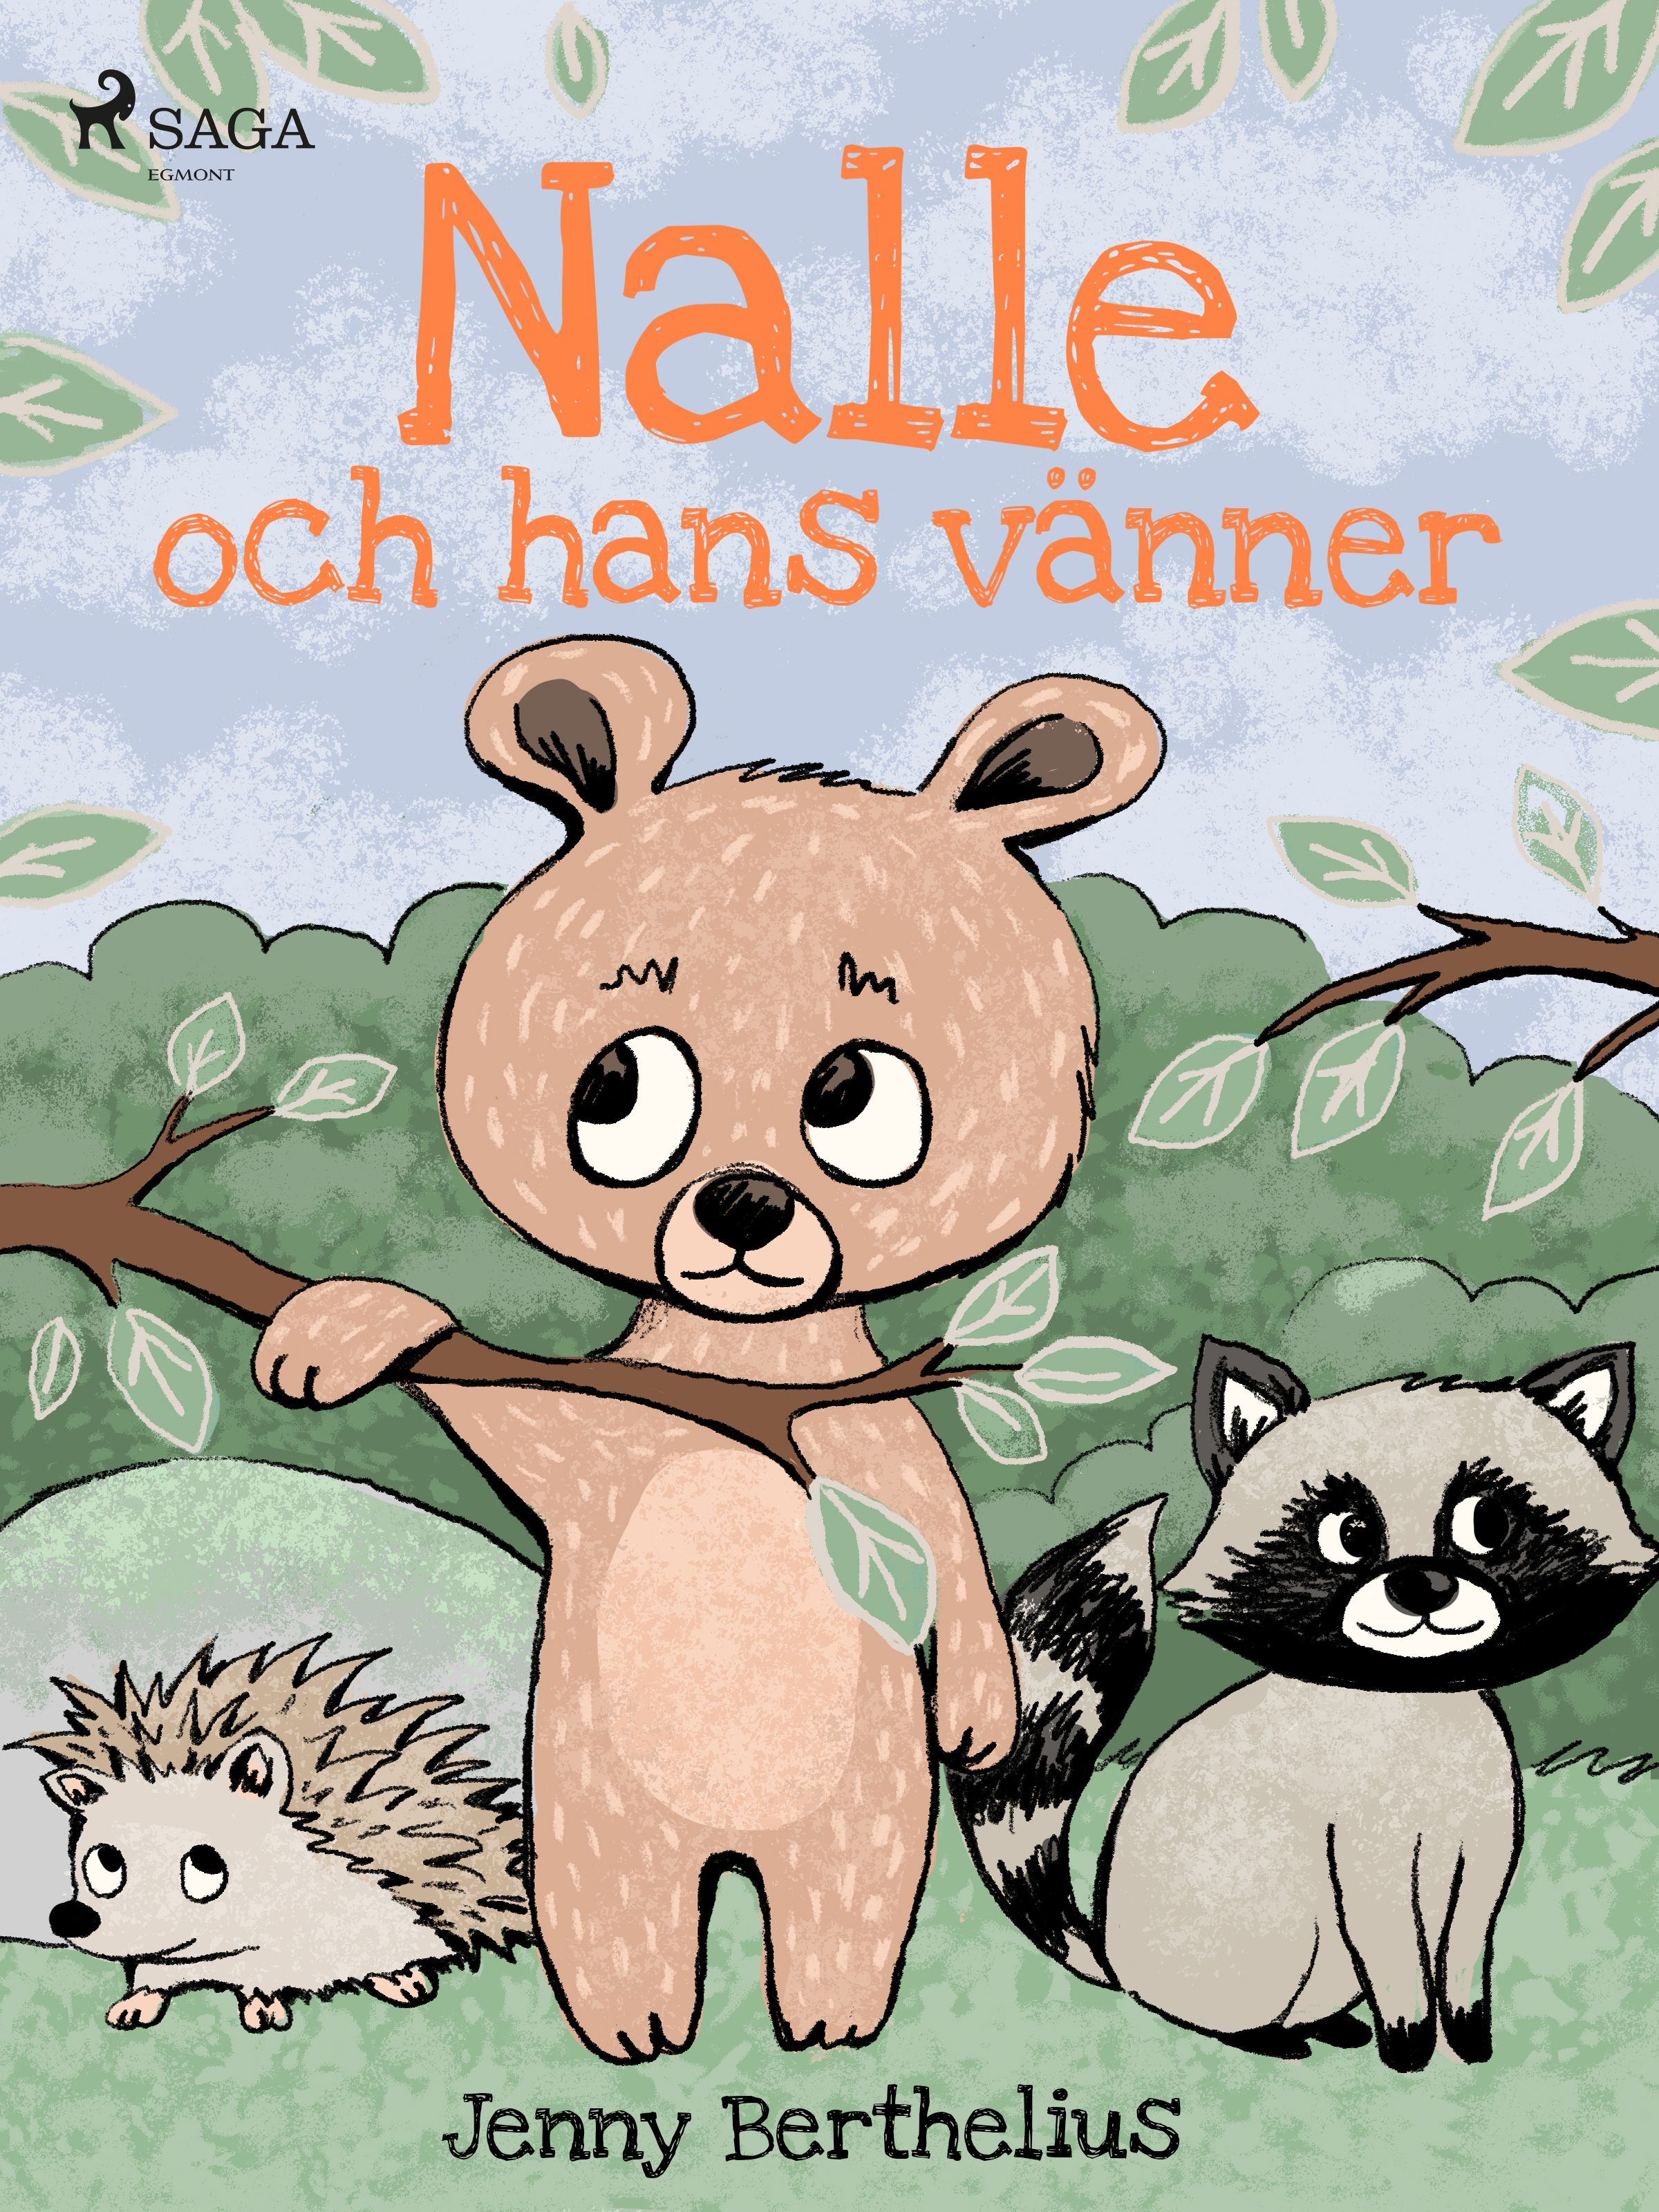 Nalle och hans vänner, eBook by Jenny Berthelius